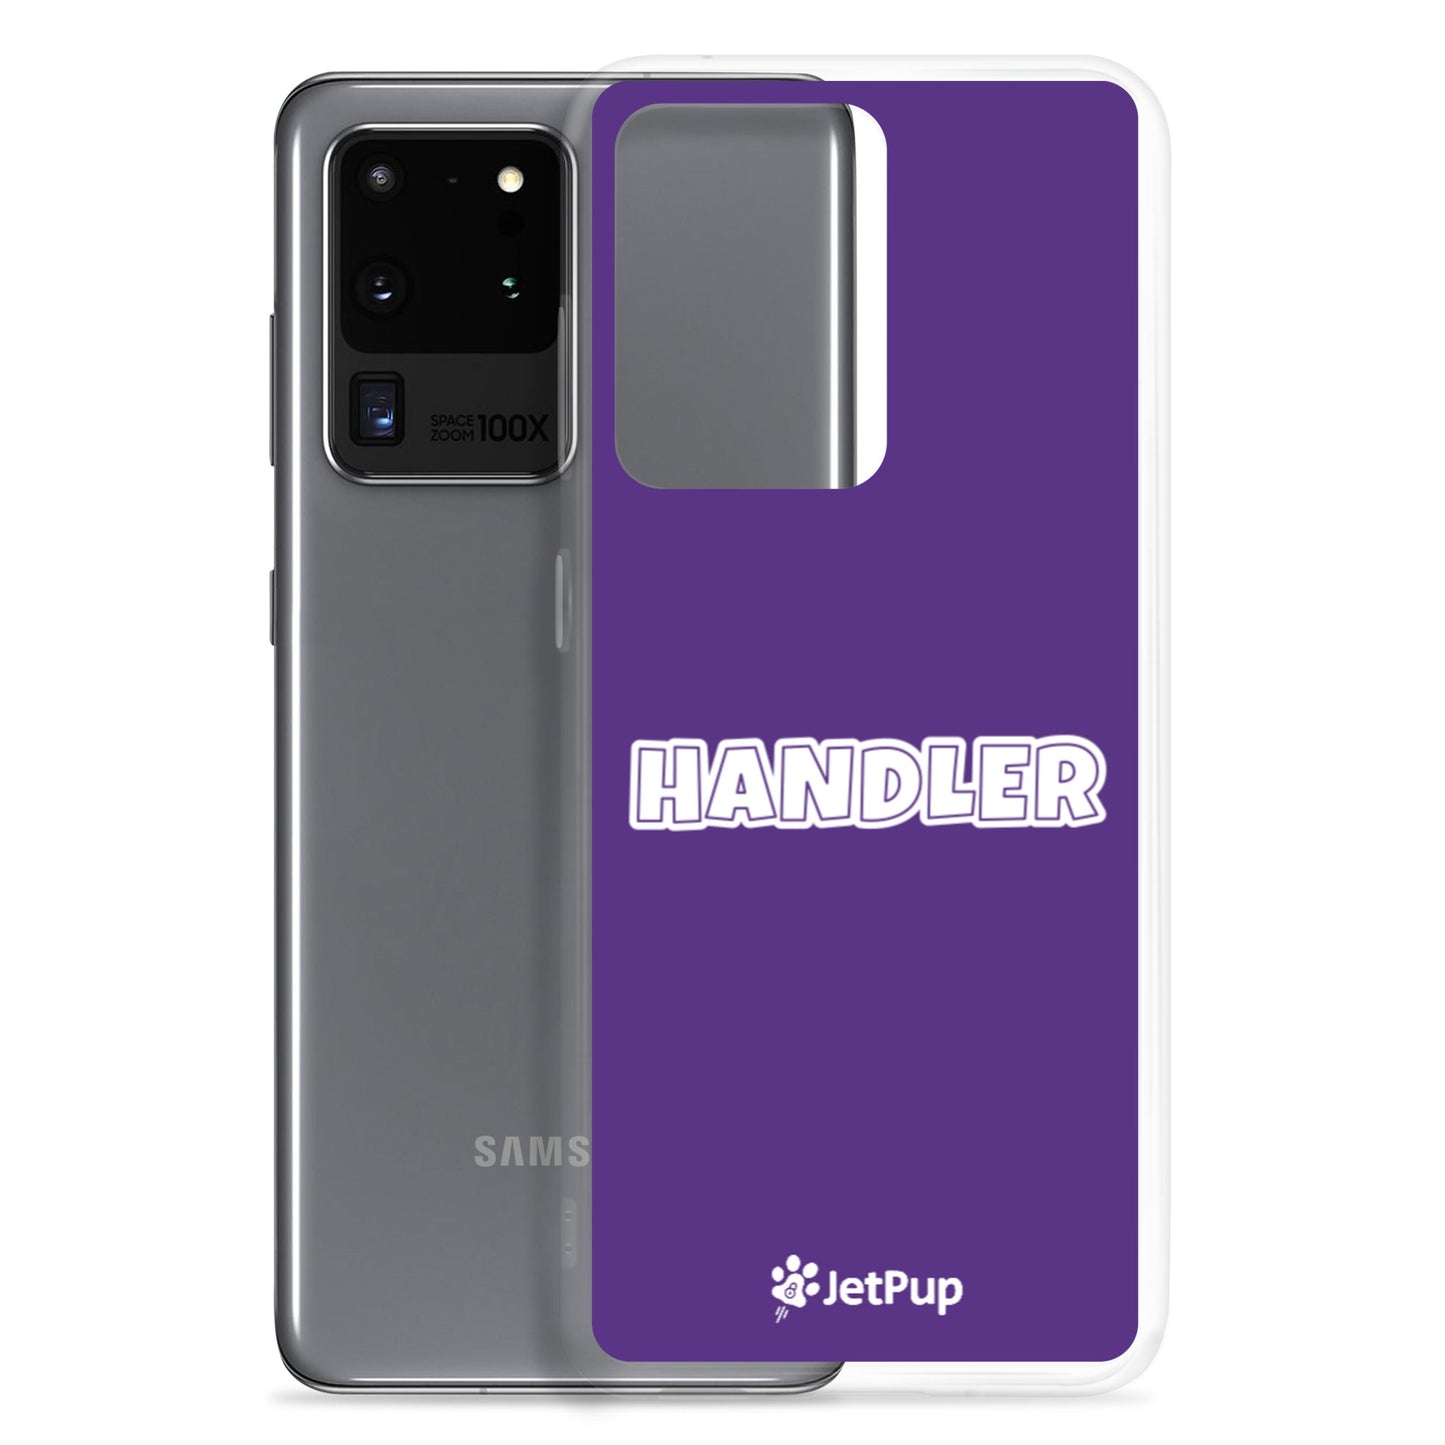 Handler Samsung Case - Purple - JetPup